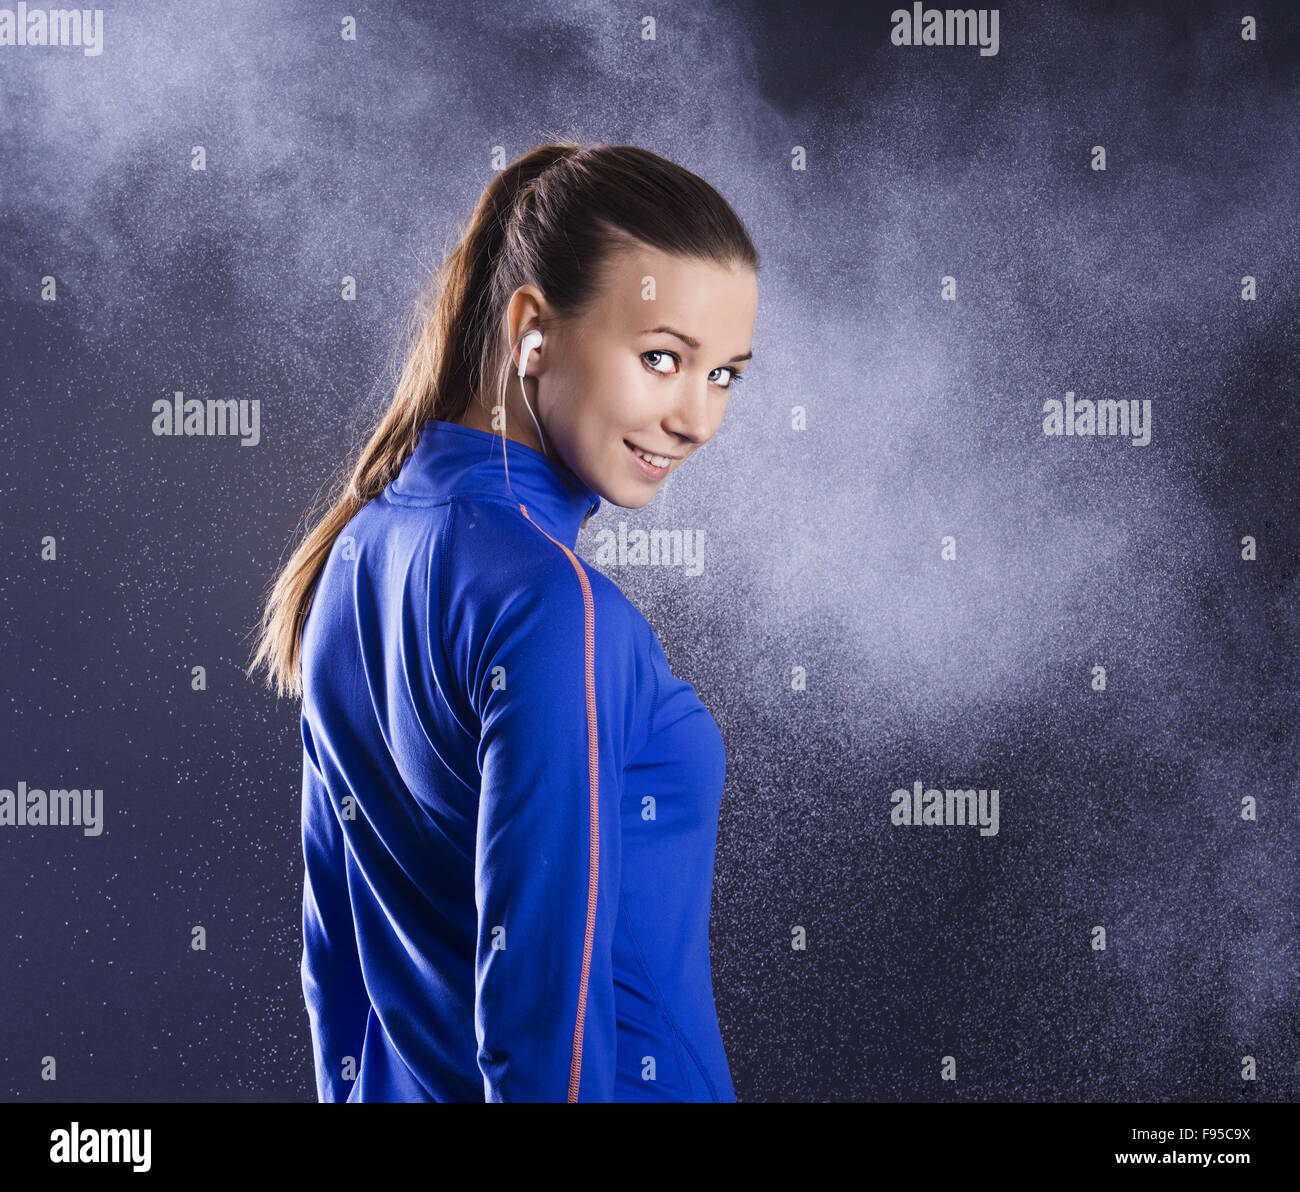 Junge Fitness Sportler posiert im Studio mit schwarzem Hintergrund. Stockfoto